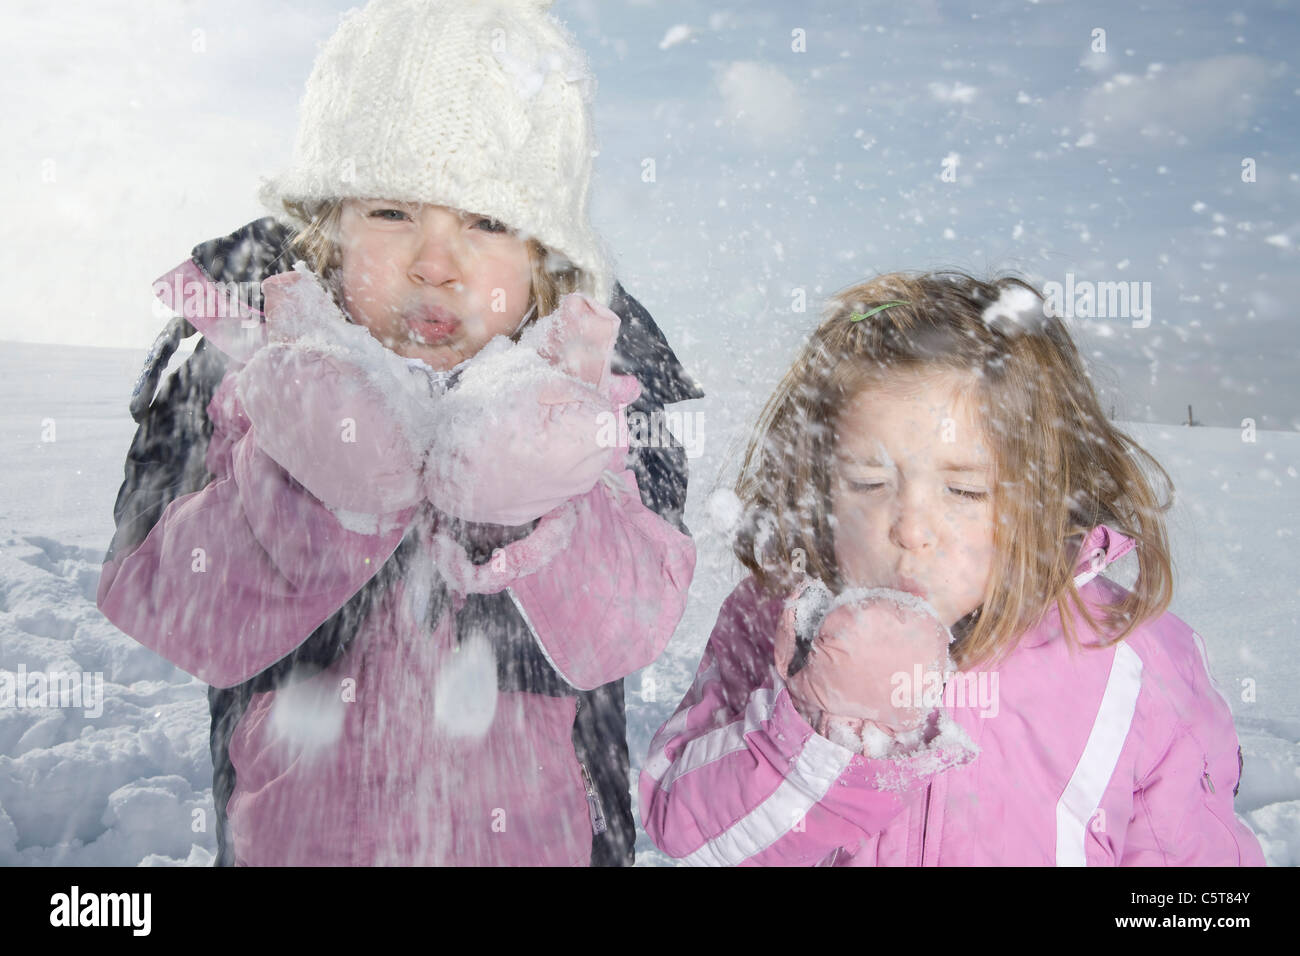 Germany, Bavaria, Munich, deux filles (4-5) (8-9) in snowy Landscape, portrait Banque D'Images